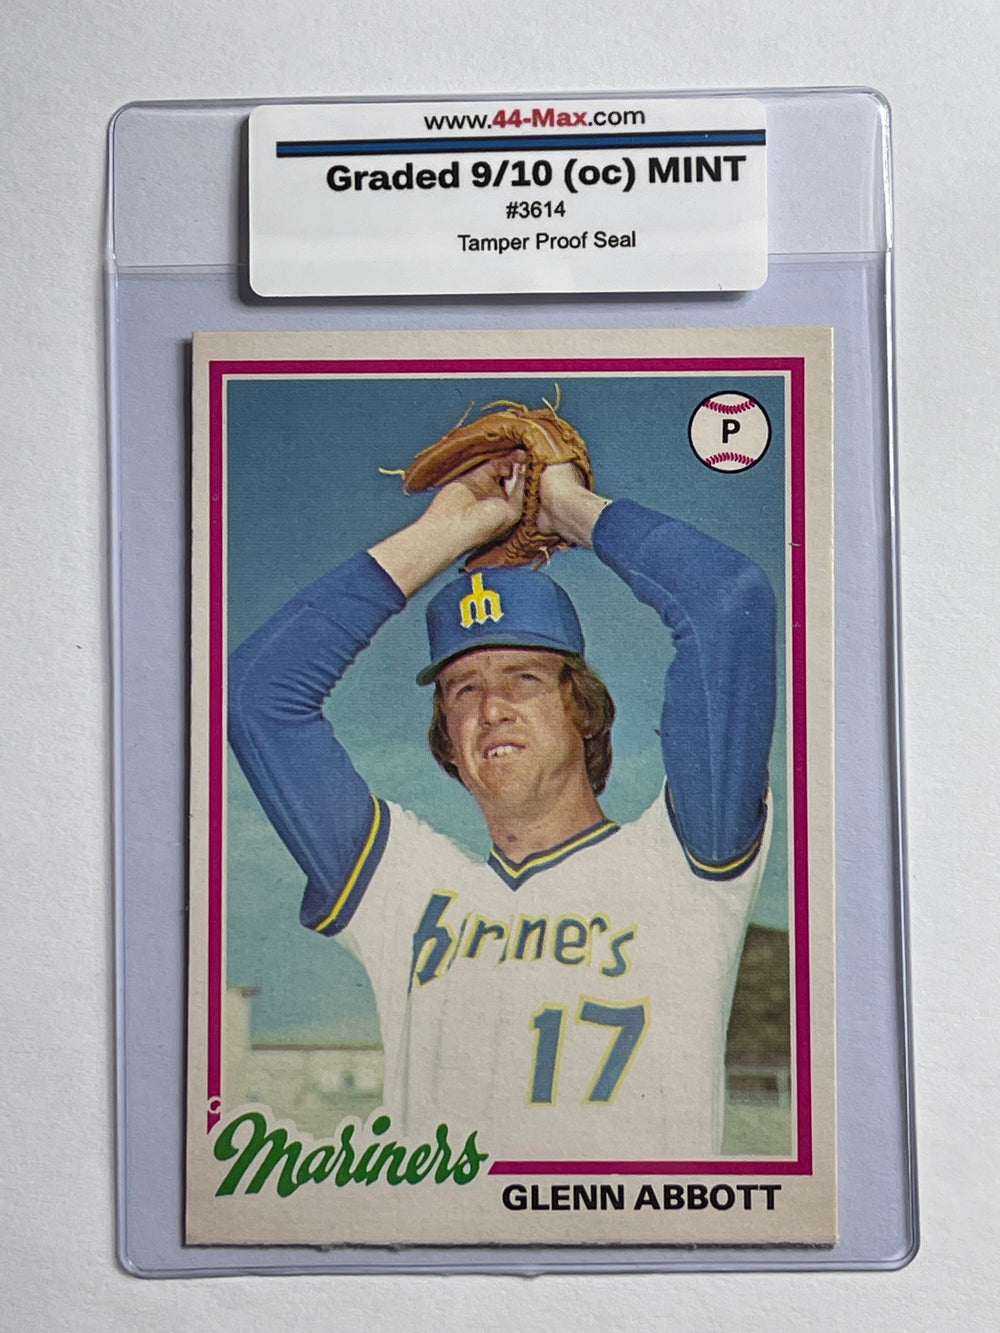 Glenn Abbott 1978 O-Pee-Chee Baseball Card. 44-Max 9/10 (oc) MINT #3614